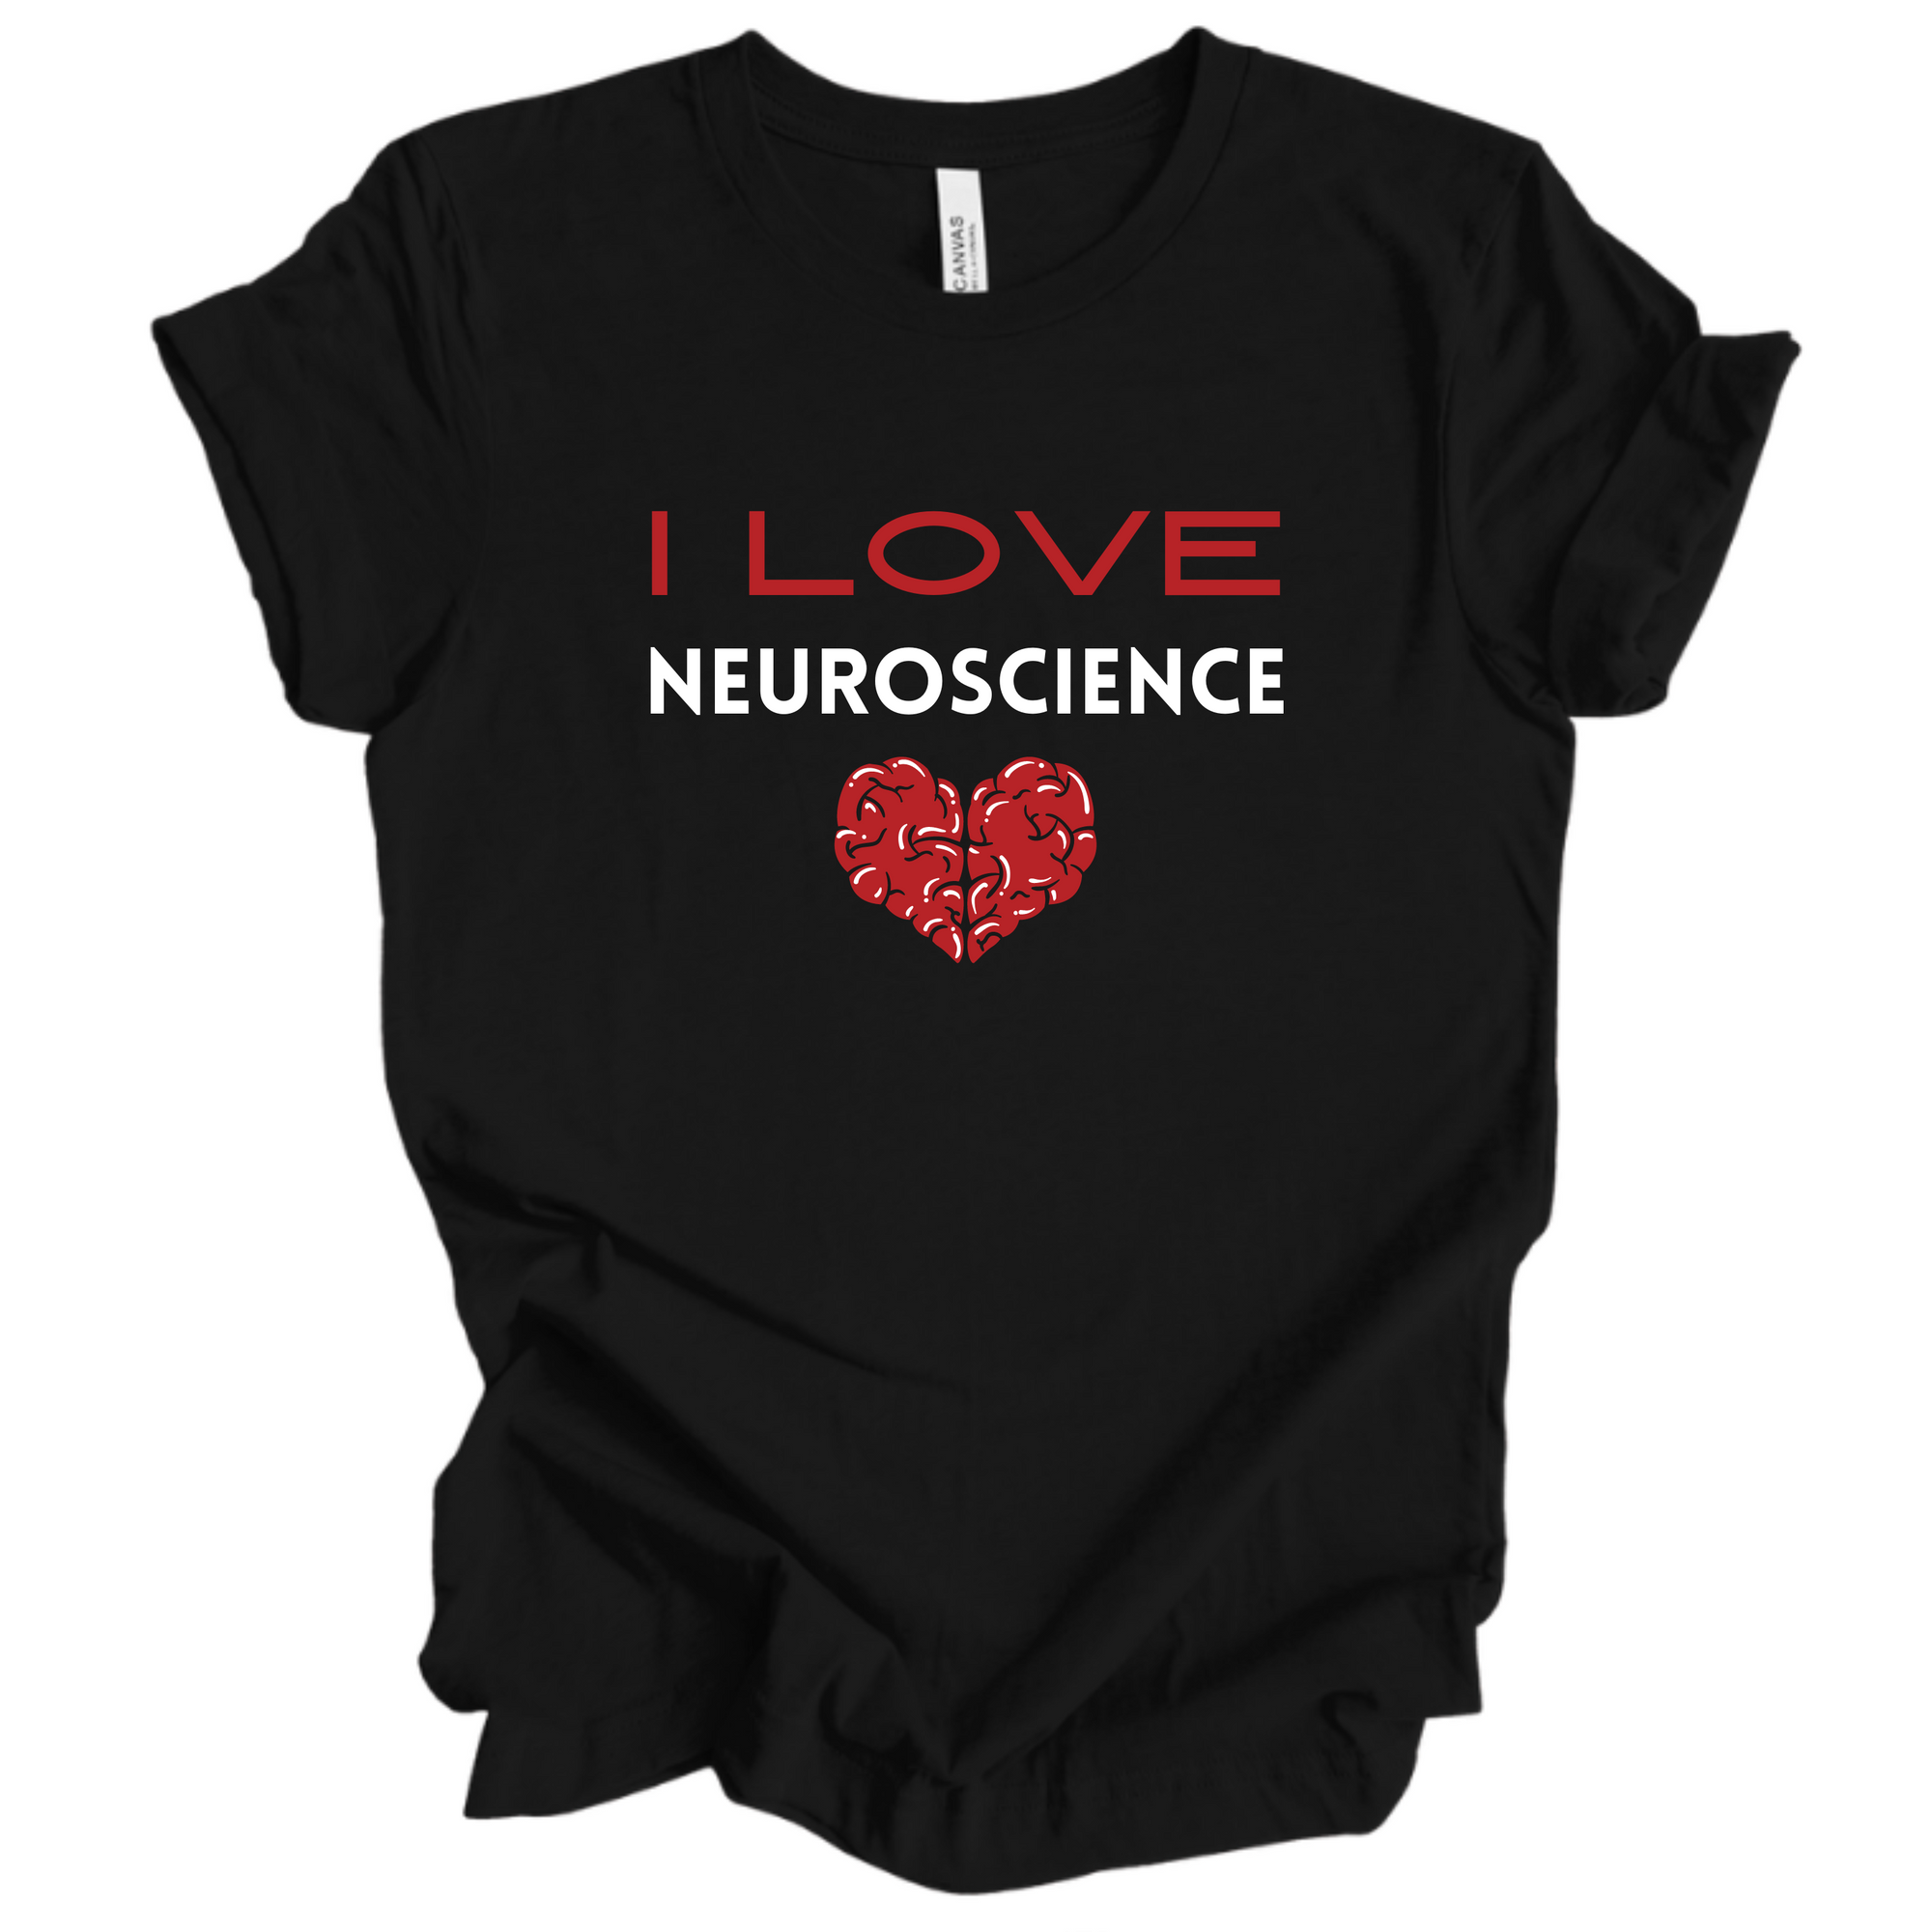 I Love Neuroscience - Short Sleeve Tee